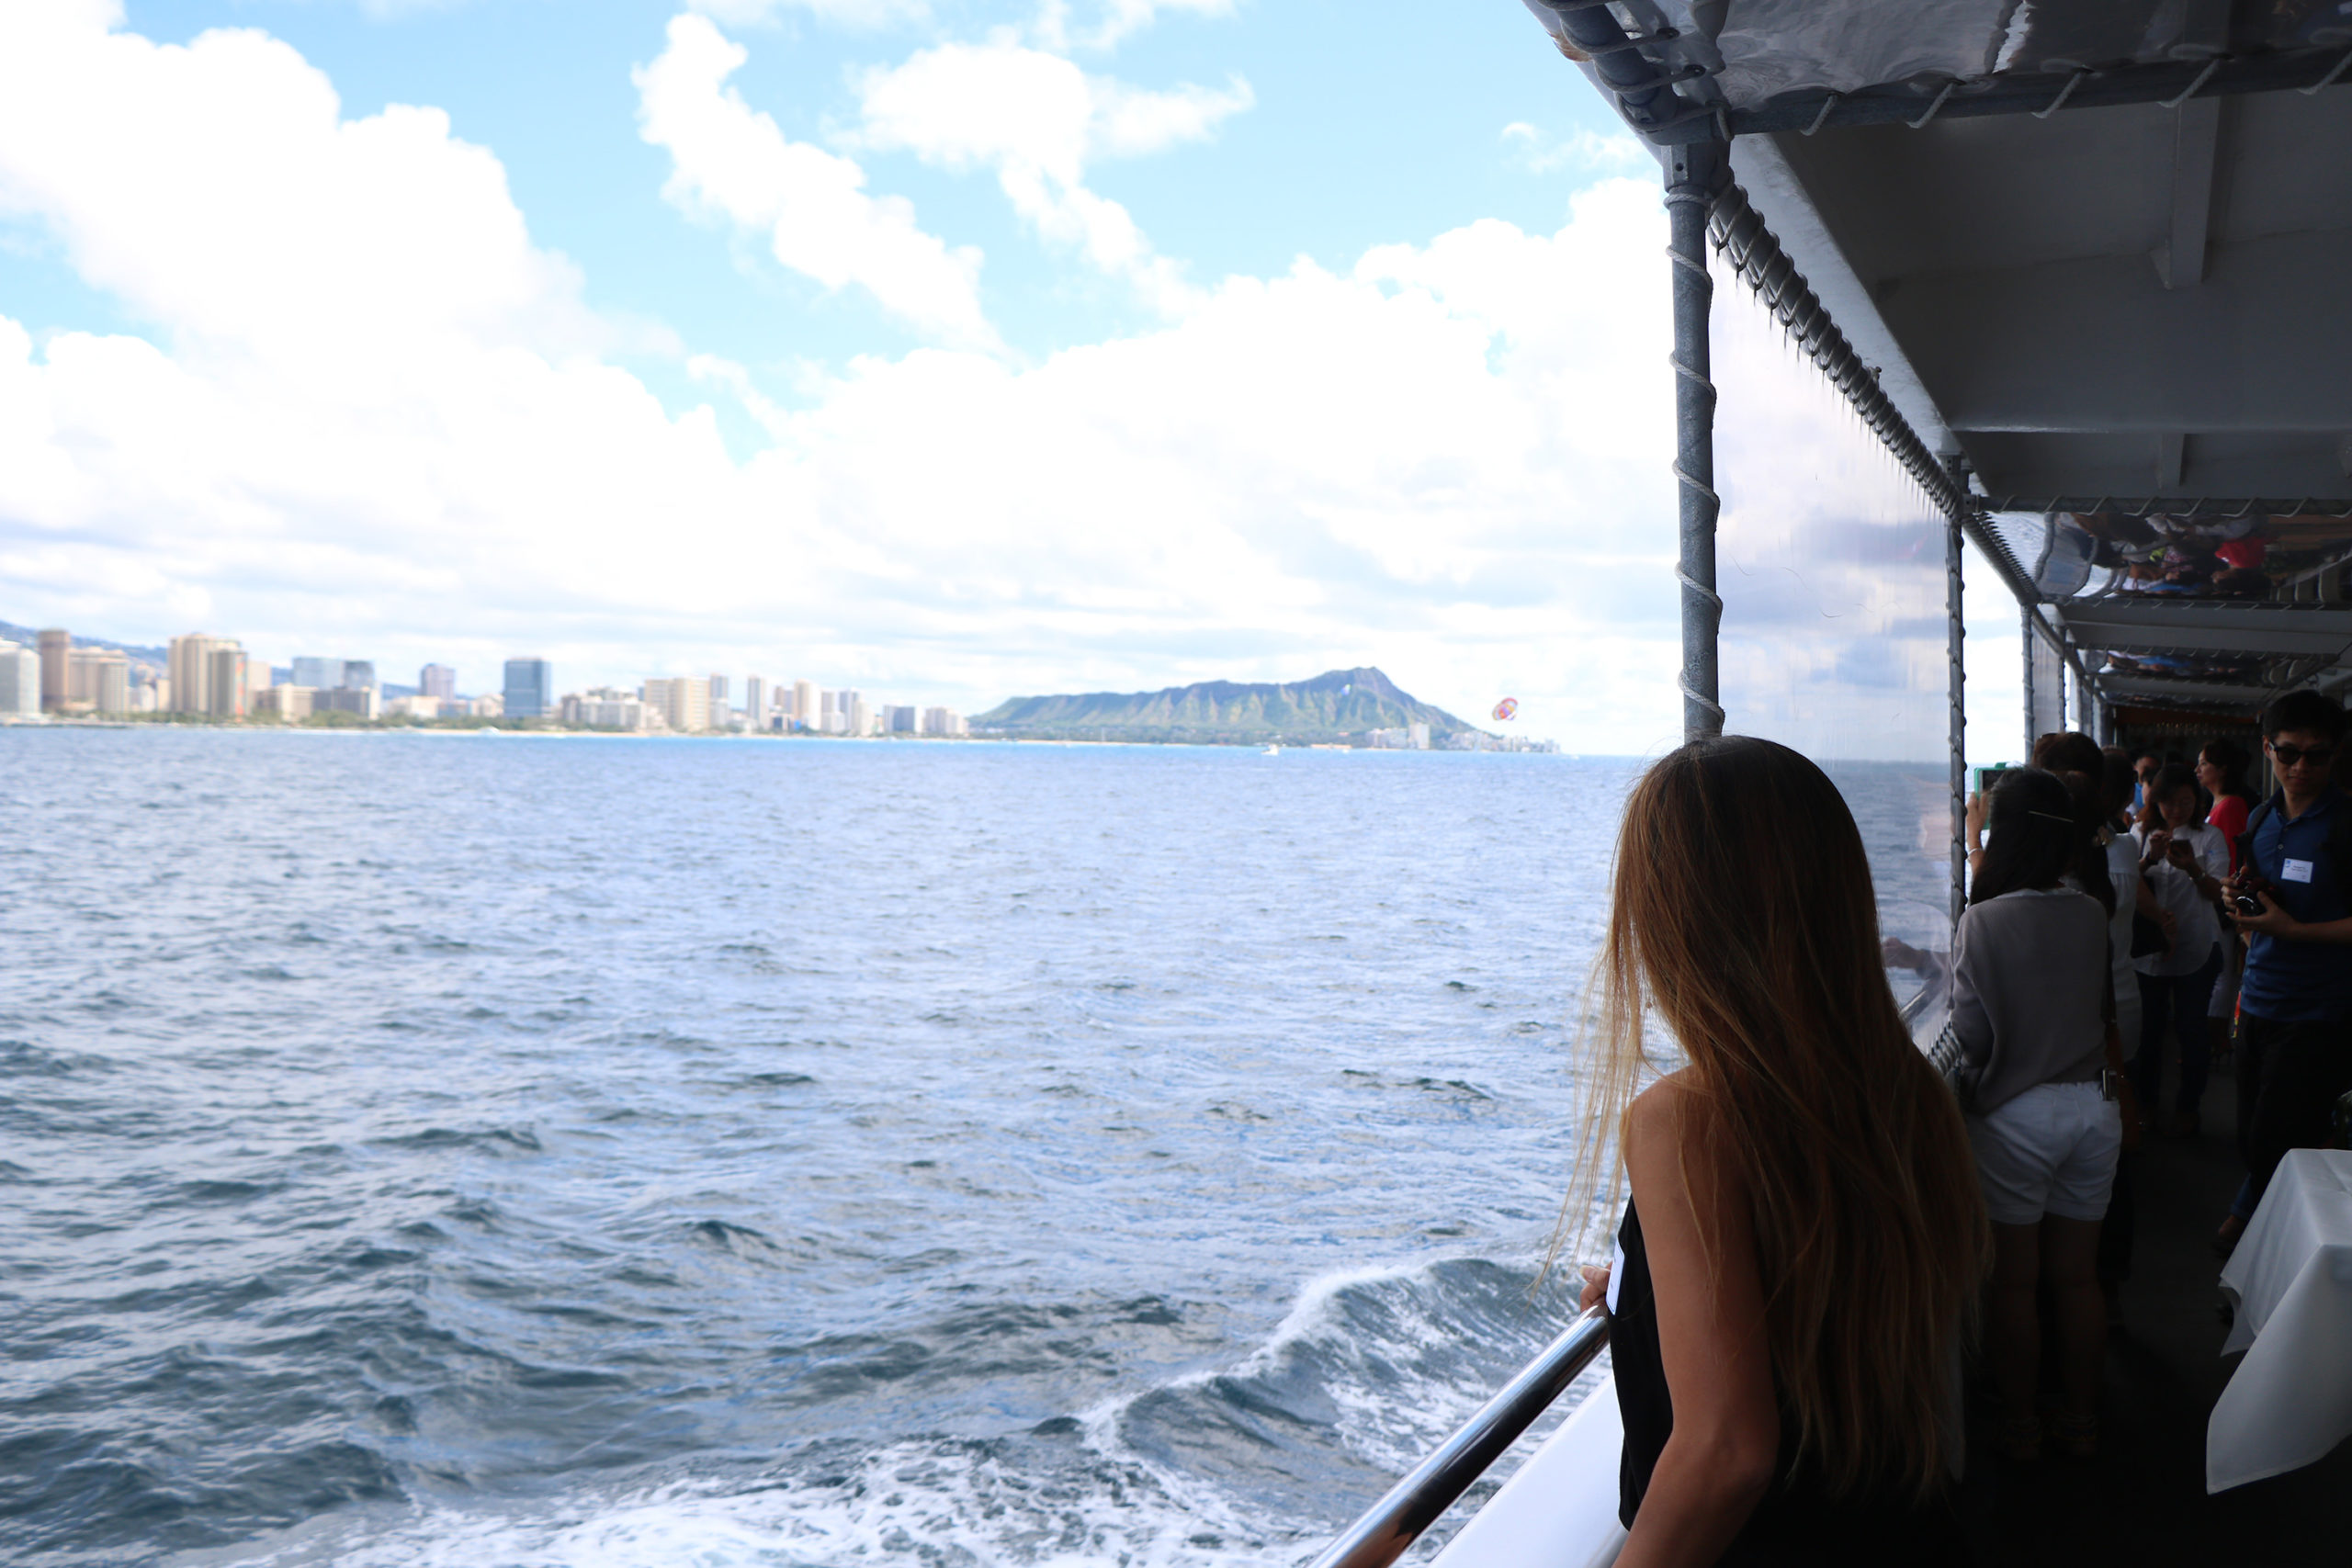 honolulu star whale watching cruise